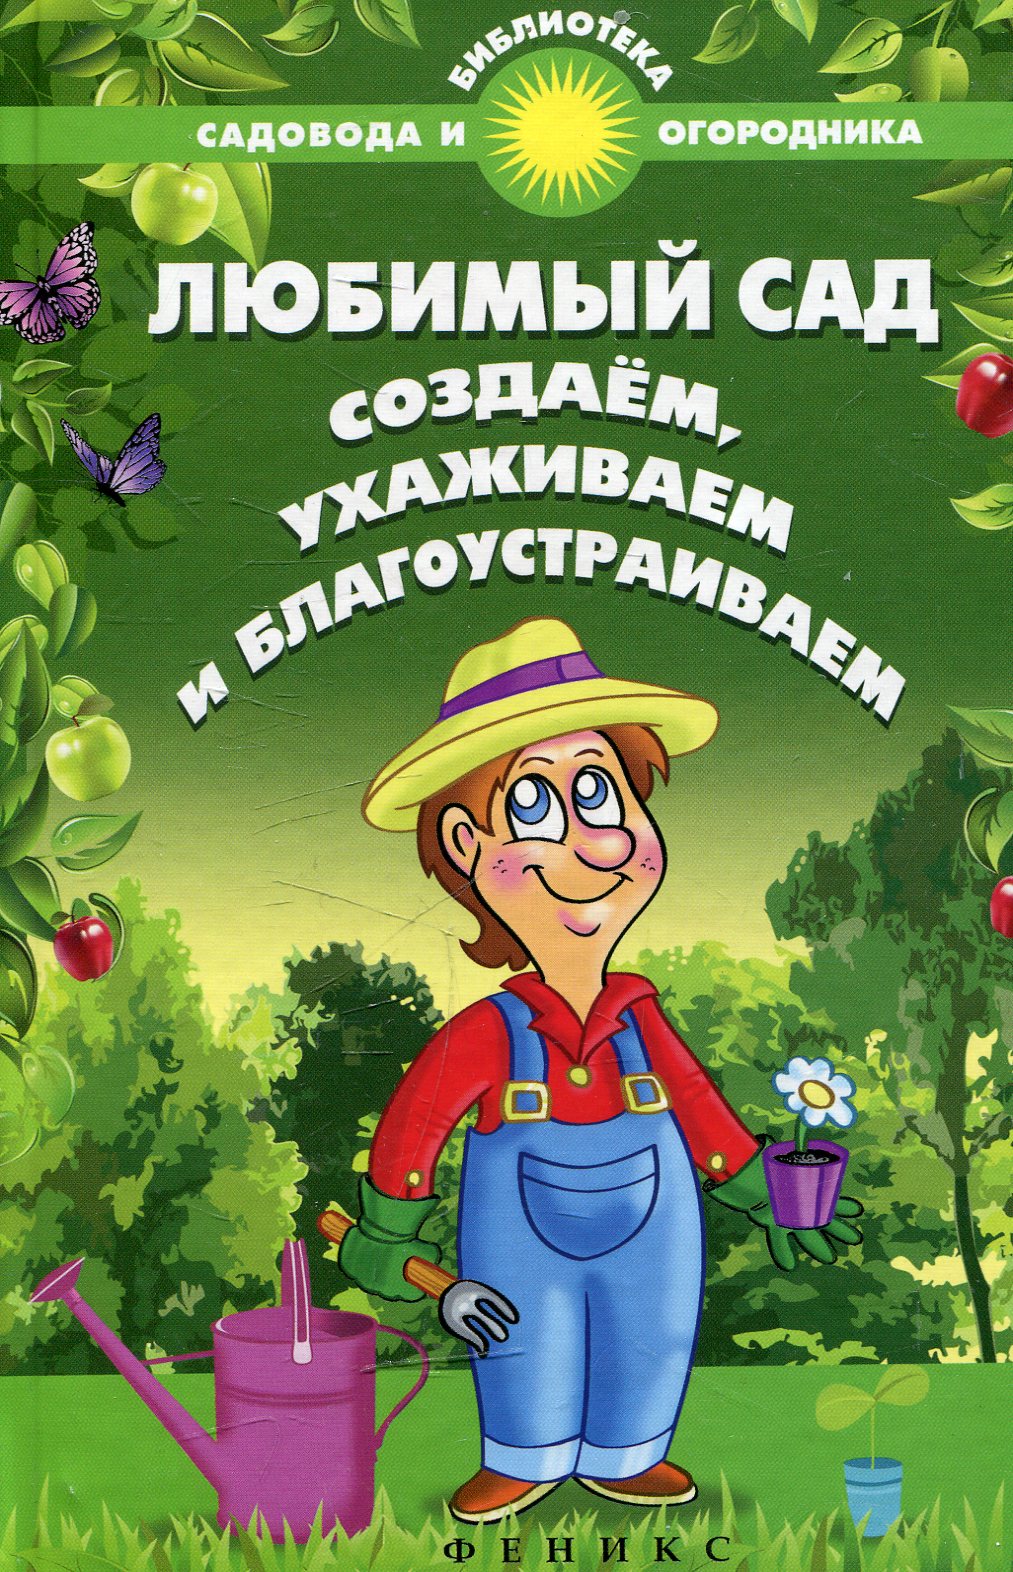 Обложка книги садовник